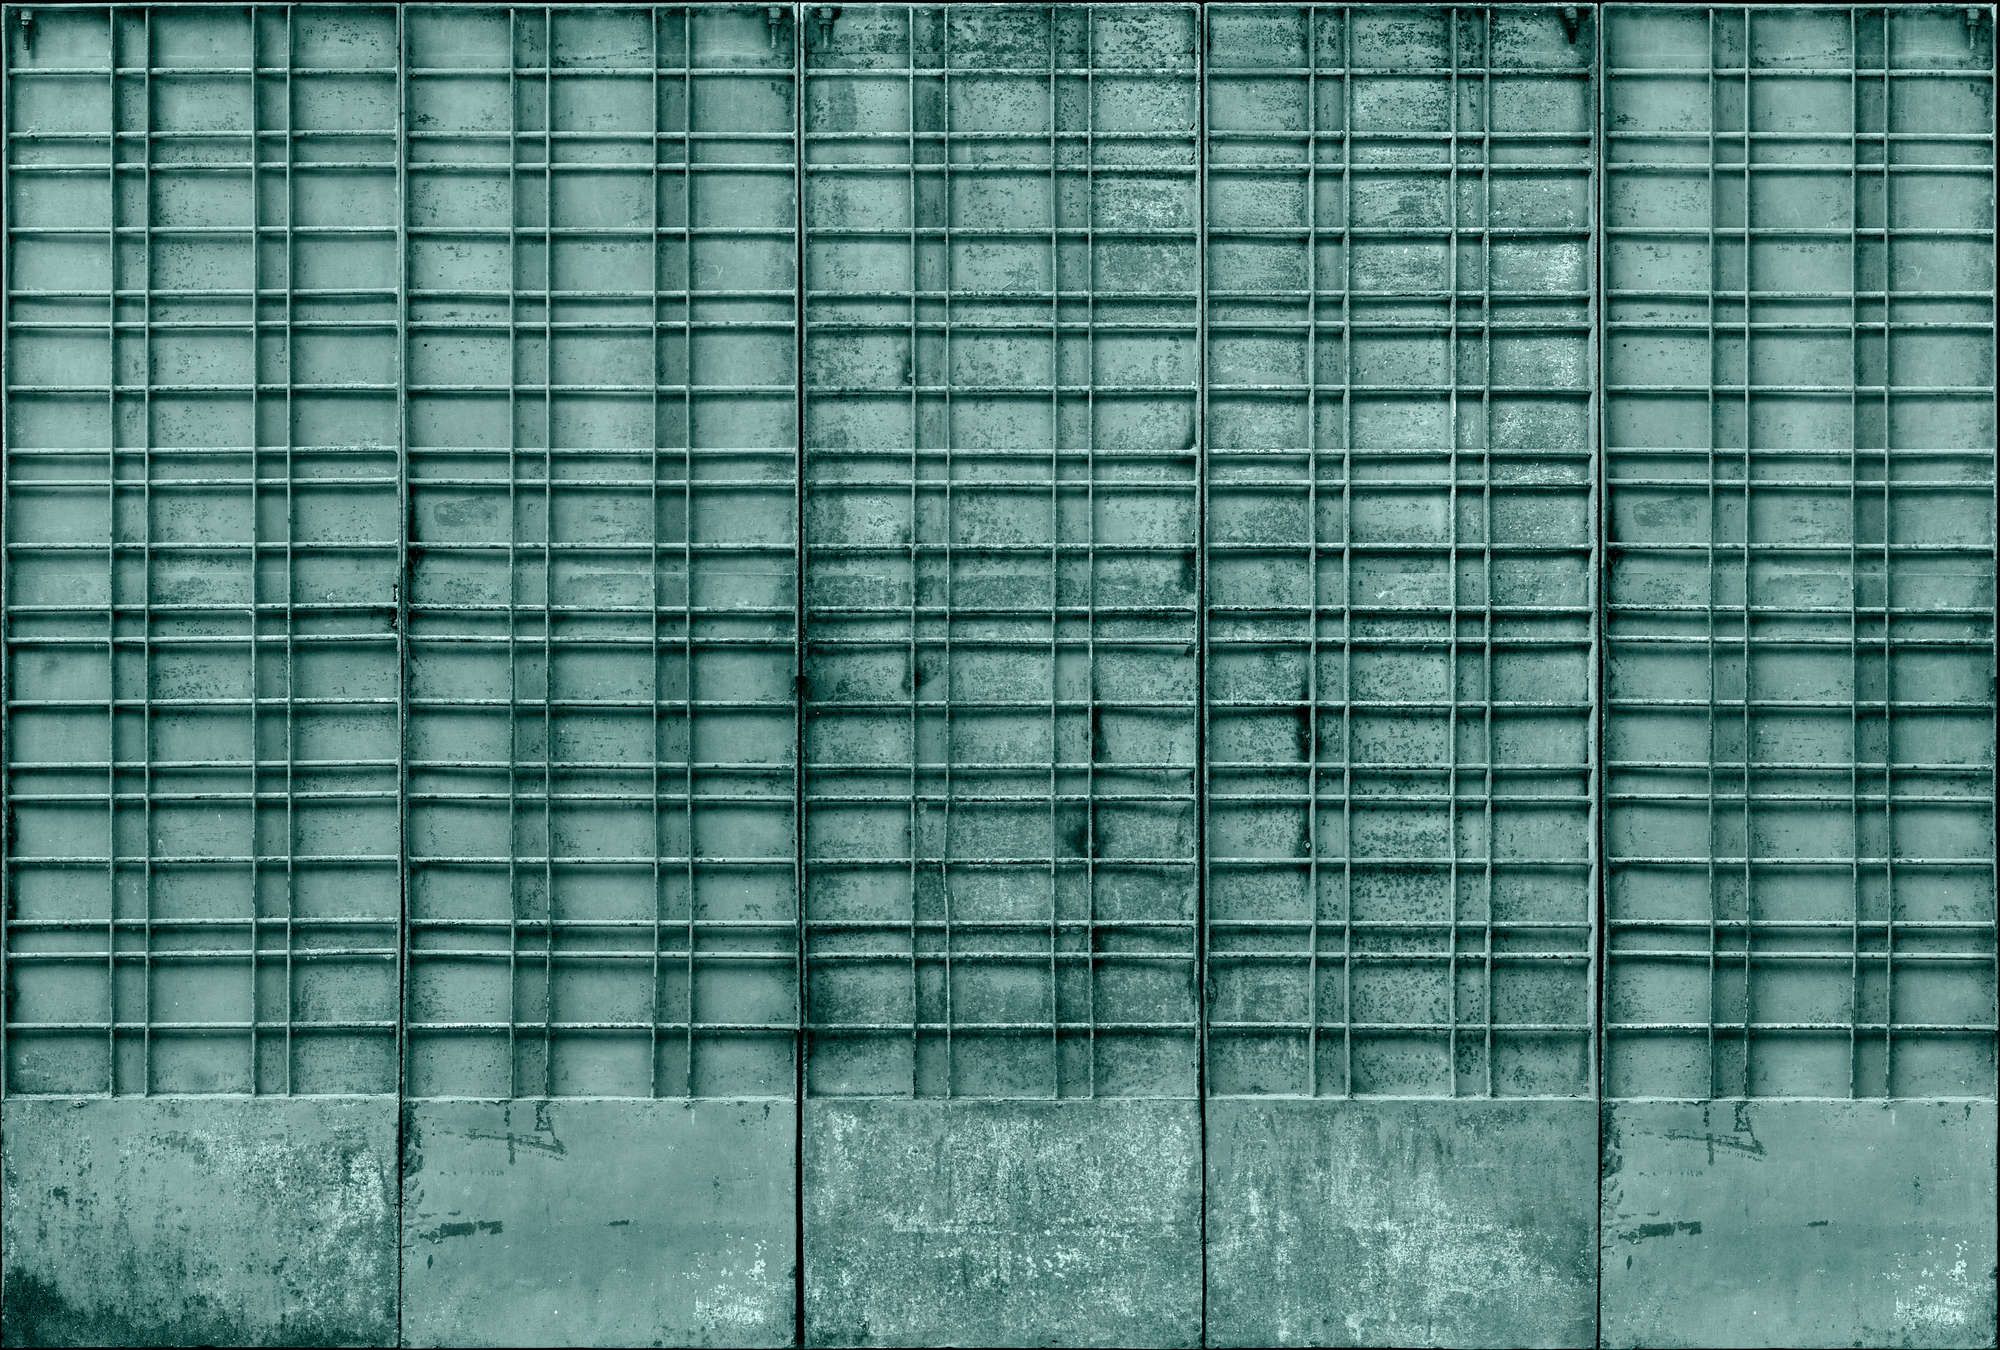             Fotomural »bangalore« - Primer plano de una puerta de metal color petróleo con decoraciones rectangulares - Tela no tejida de alta calidad, lisa y ligeramente brillante
        